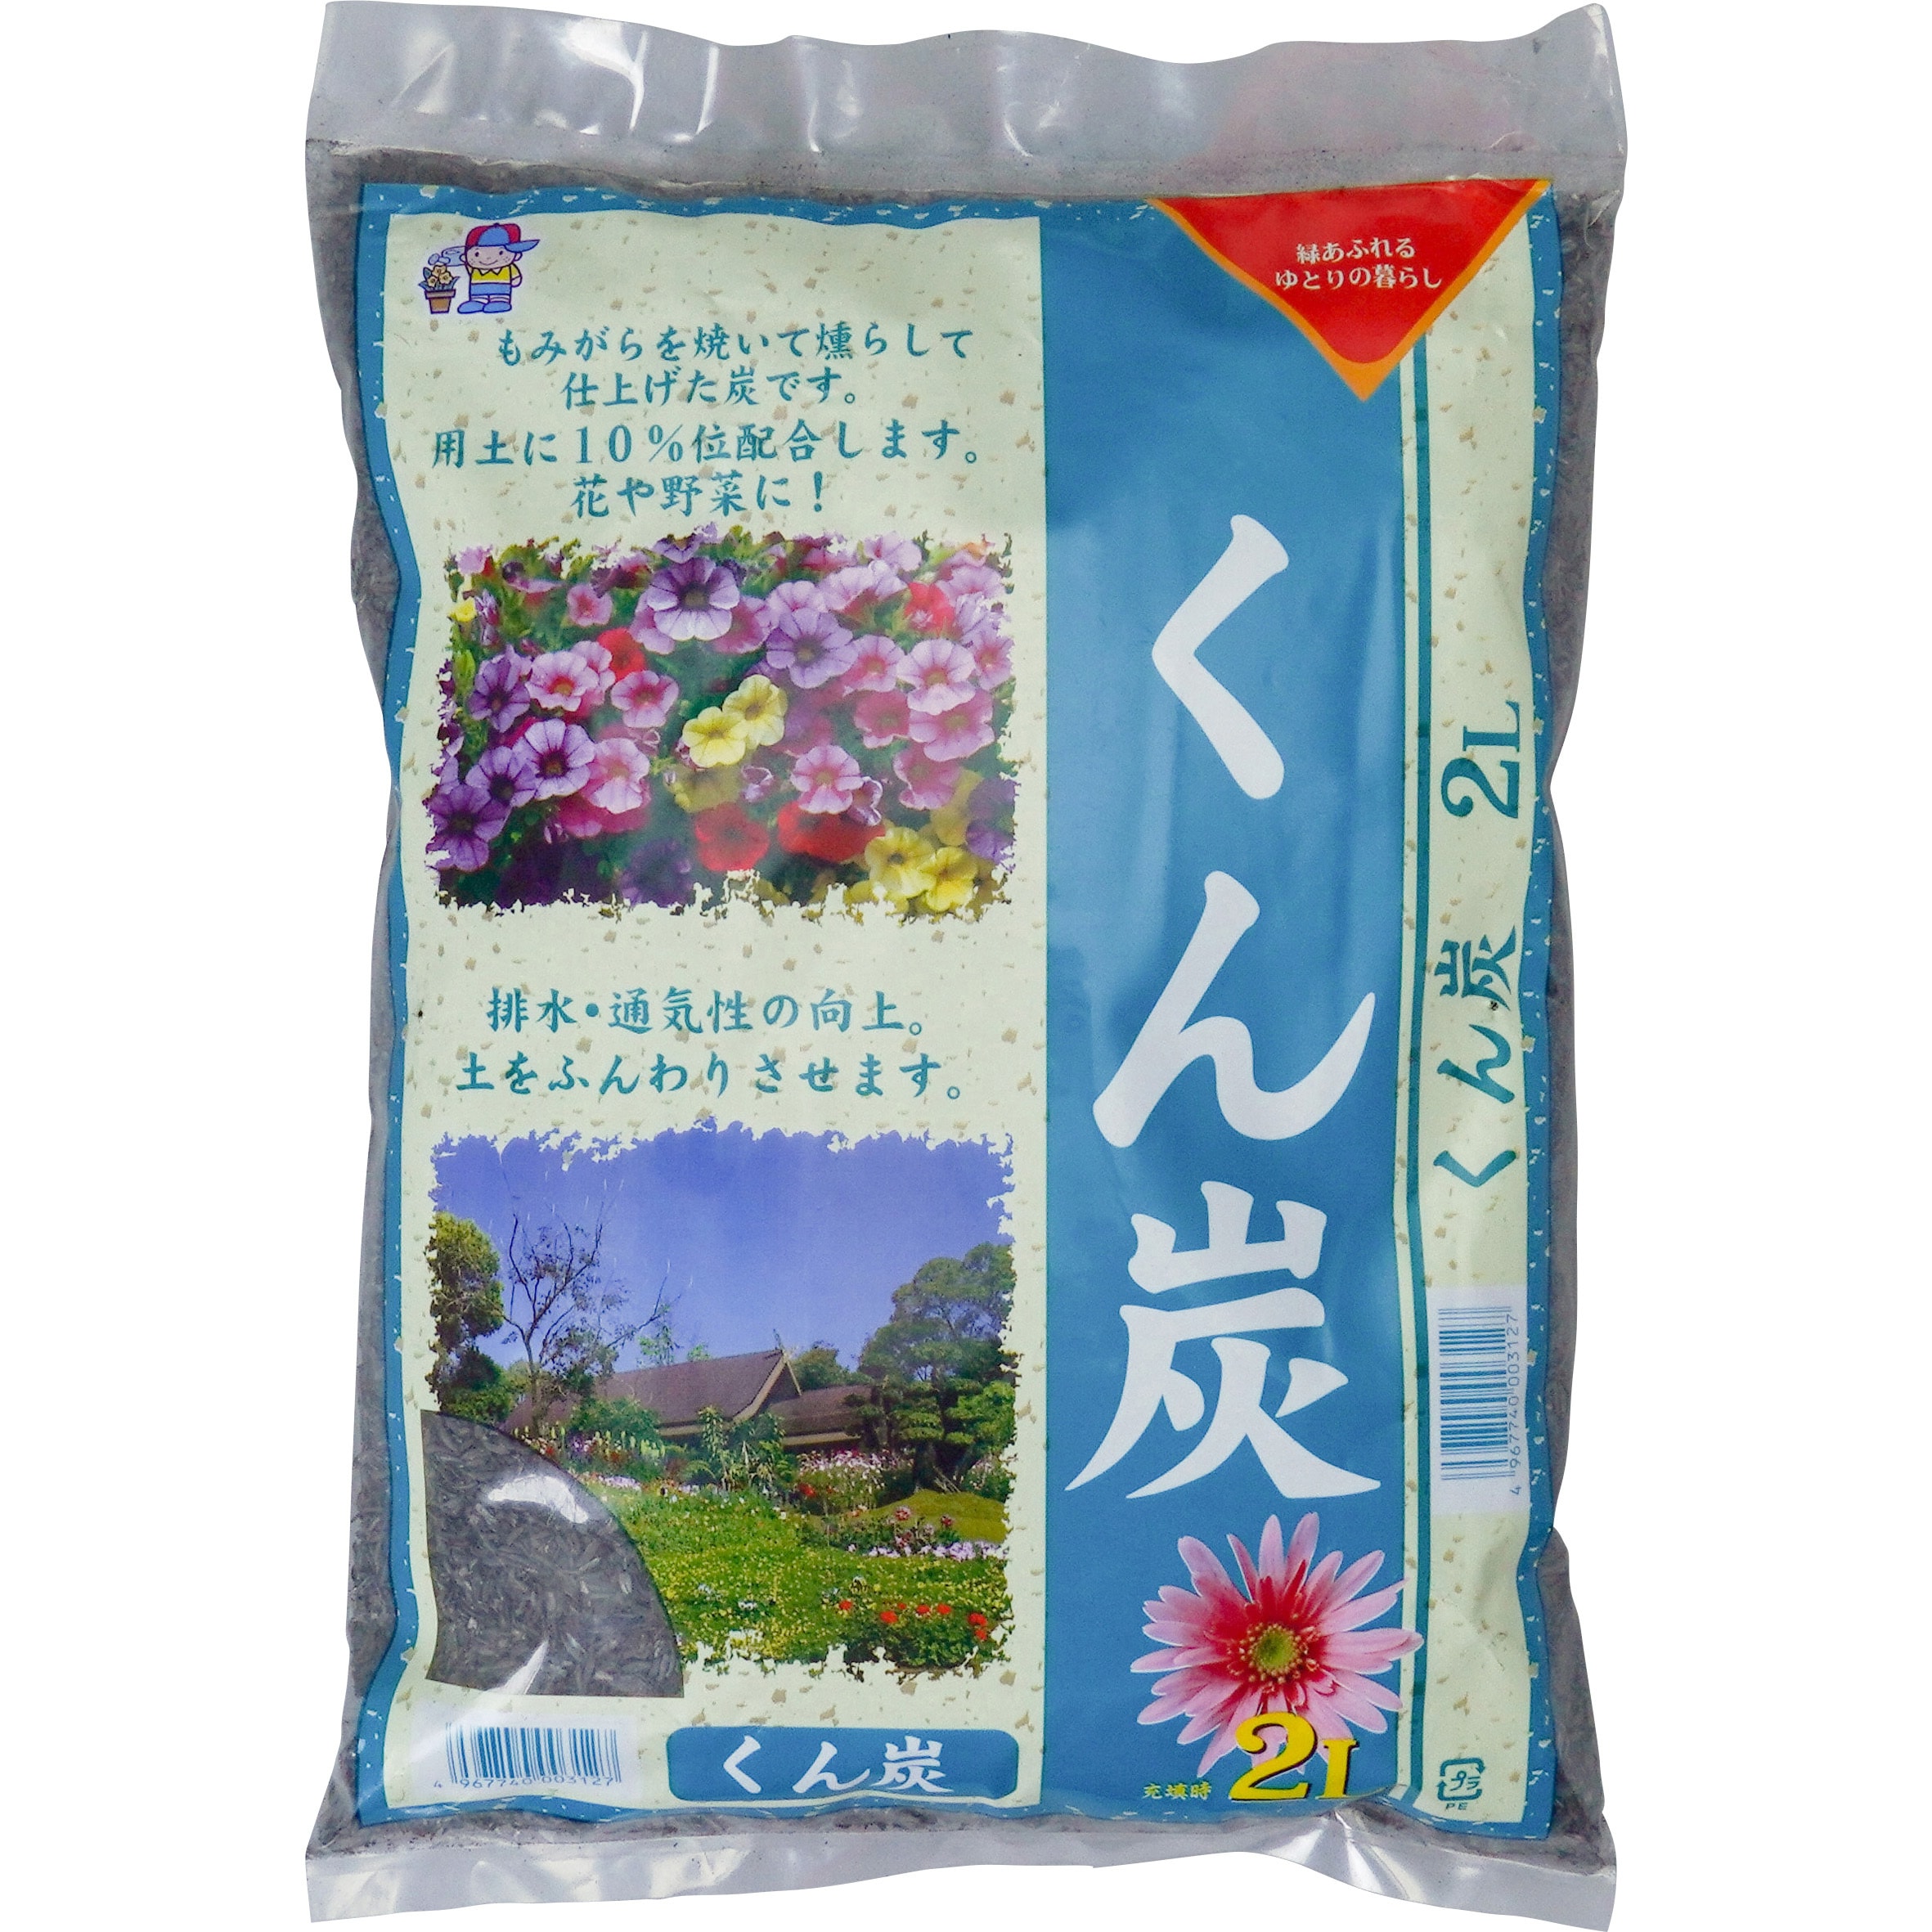 くん炭 1袋(2L) あかぎ園芸 【通販サイトMonotaRO】